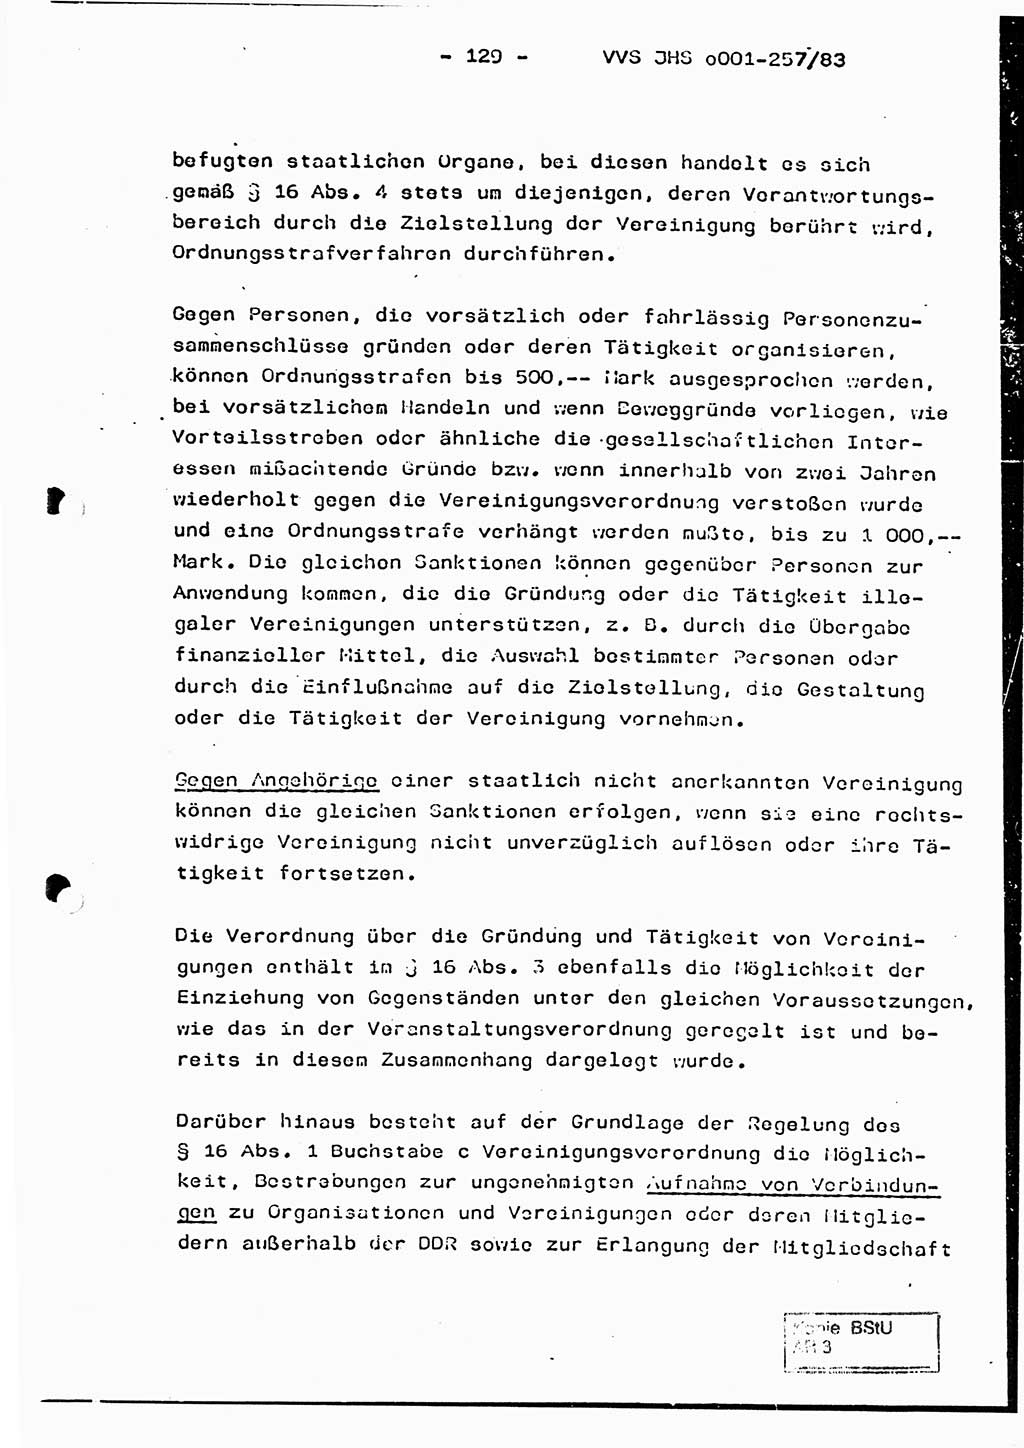 Dissertation, Oberst Helmut Lubas (BV Mdg.), Oberstleutnant Manfred Eschberger (HA IX), Oberleutnant Hans-Jürgen Ludwig (JHS), Ministerium für Staatssicherheit (MfS) [Deutsche Demokratische Republik (DDR)], Juristische Hochschule (JHS), Vertrauliche Verschlußsache (VVS) o001-257/83, Potsdam 1983, Seite 129 (Diss. MfS DDR JHS VVS o001-257/83 1983, S. 129)